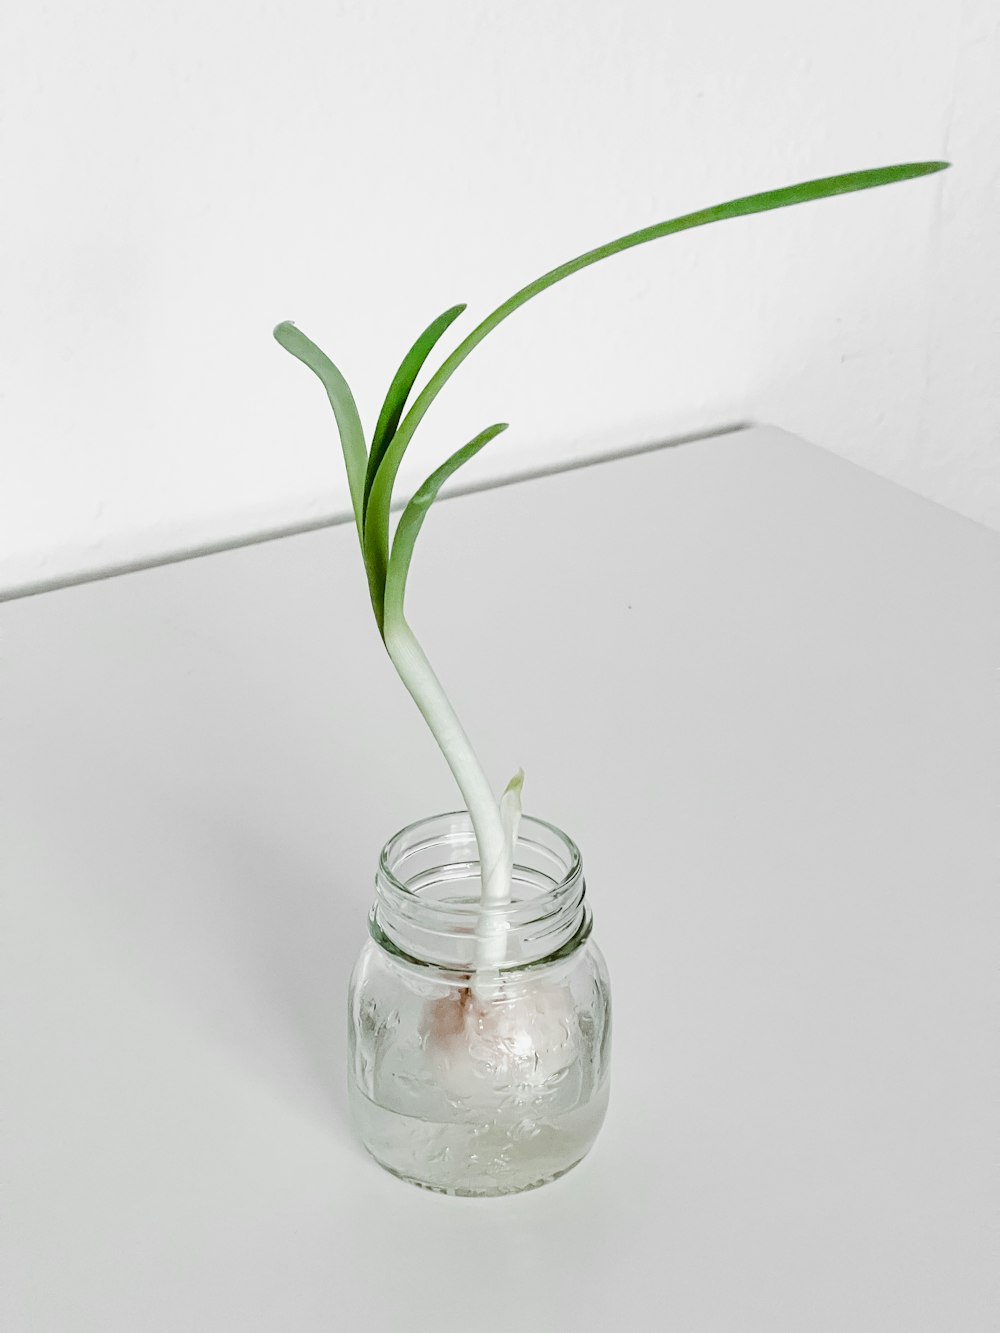 uma planta está crescendo a partir de um frasco de vidro